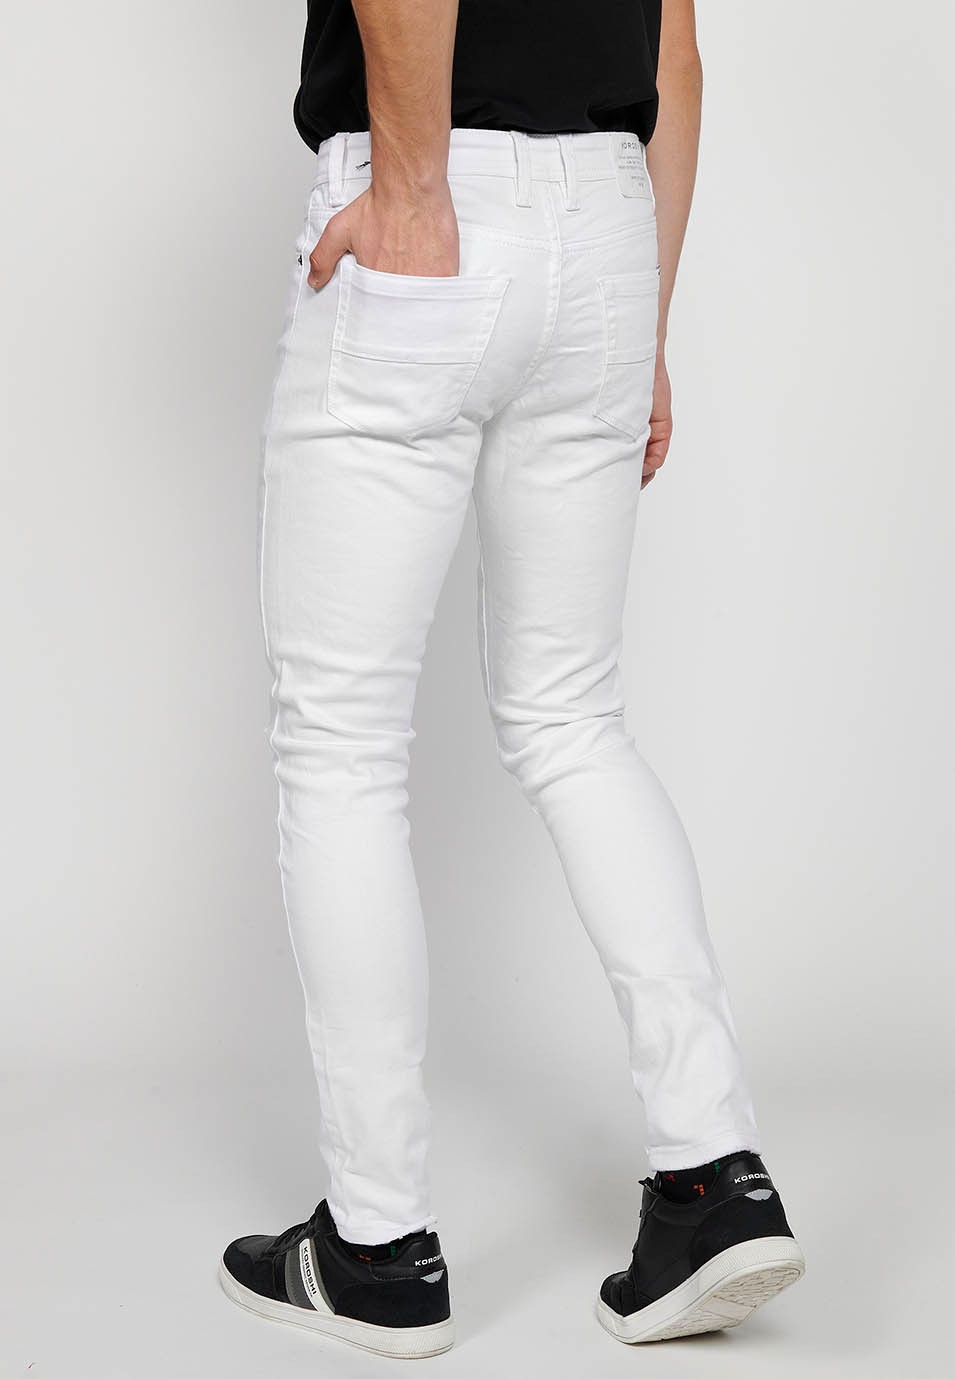 Pantalons jeans super skinny amb Tancament davanter amb cremallera i botó de Color Denim Blanc per a Home 2